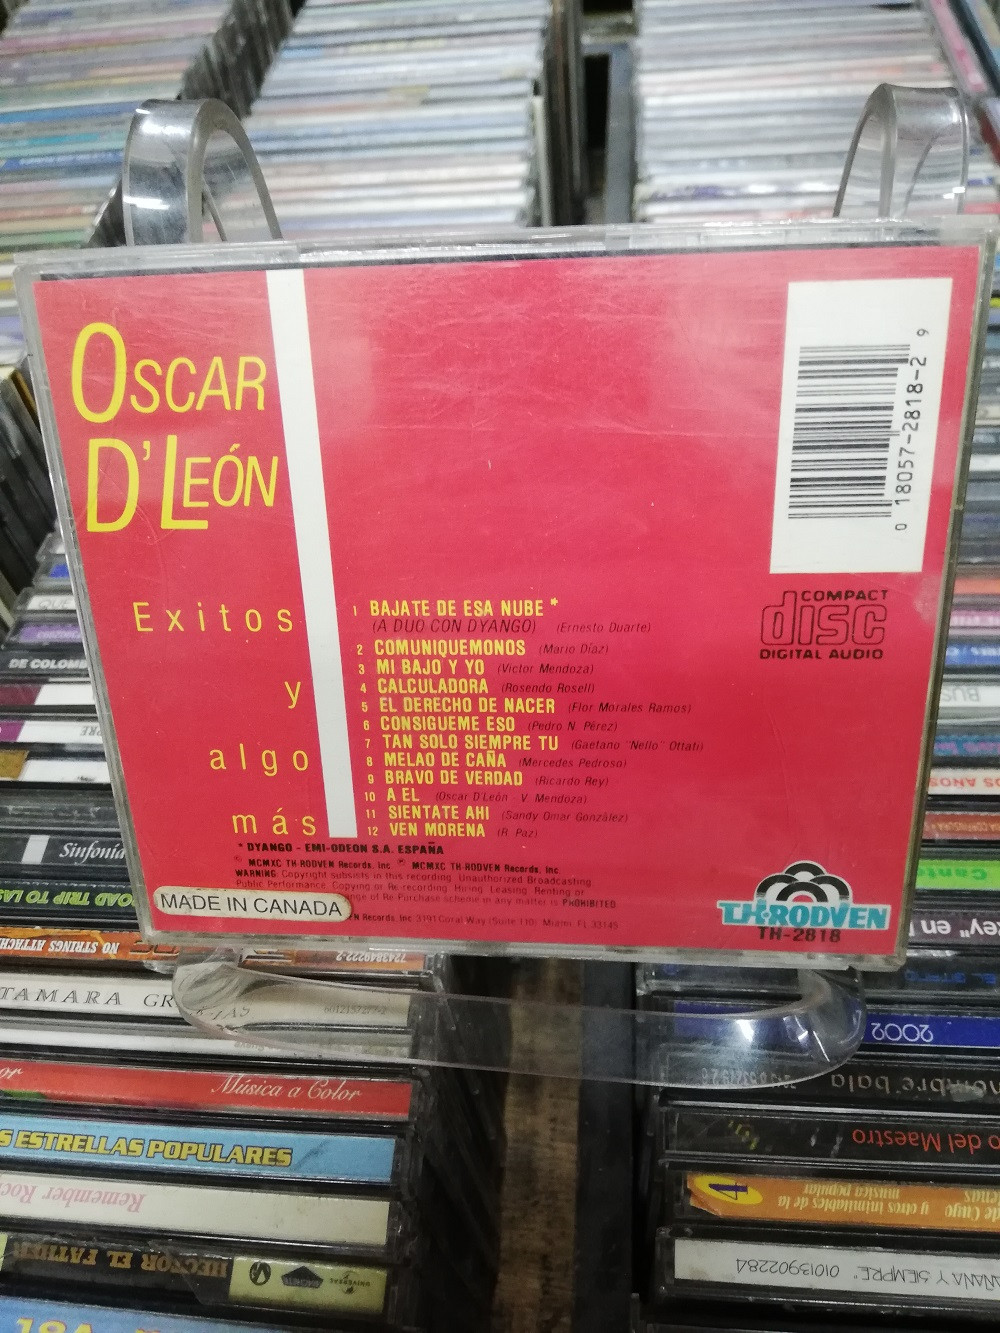 Imagen CD OSCAR D´ LEON - EXITOS Y ALGO MAS 2